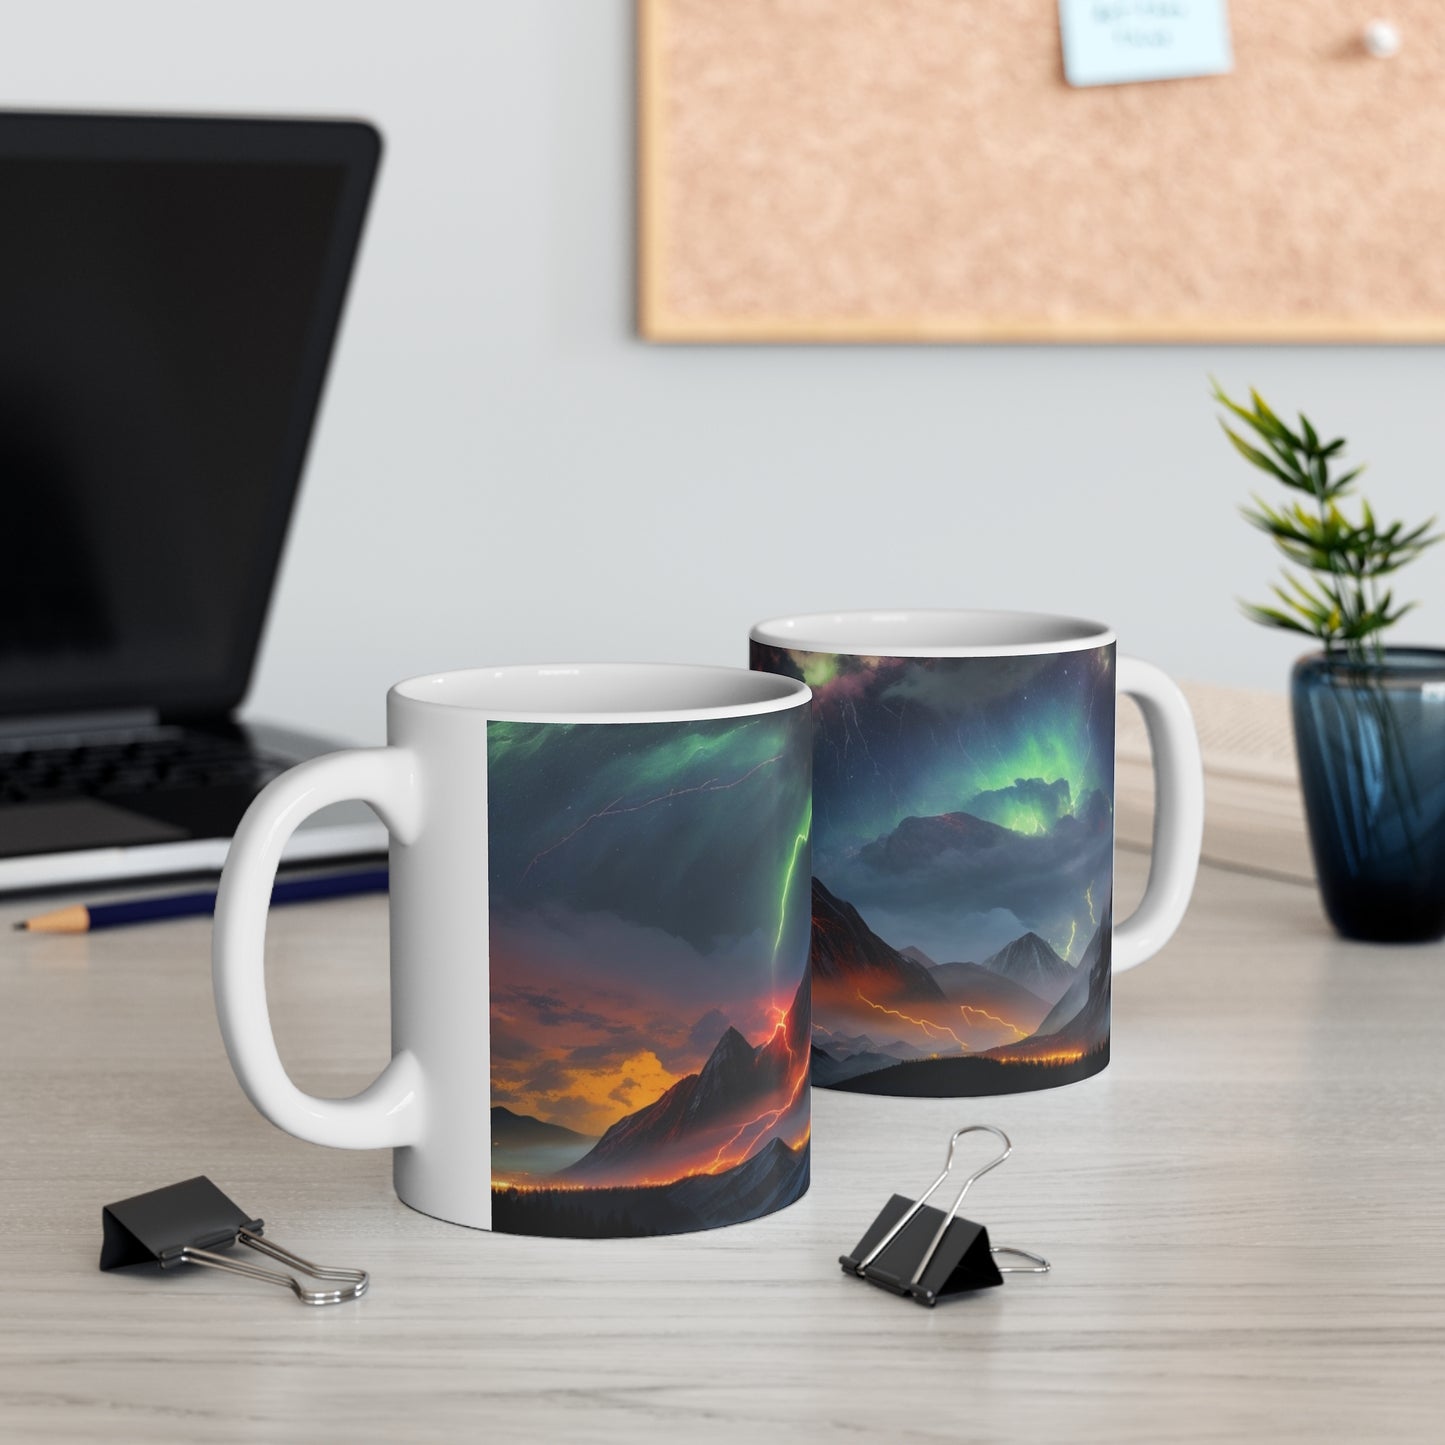 Large Mountain Colourful Lightning Mug - Ceramic Coffee Mug 11oz